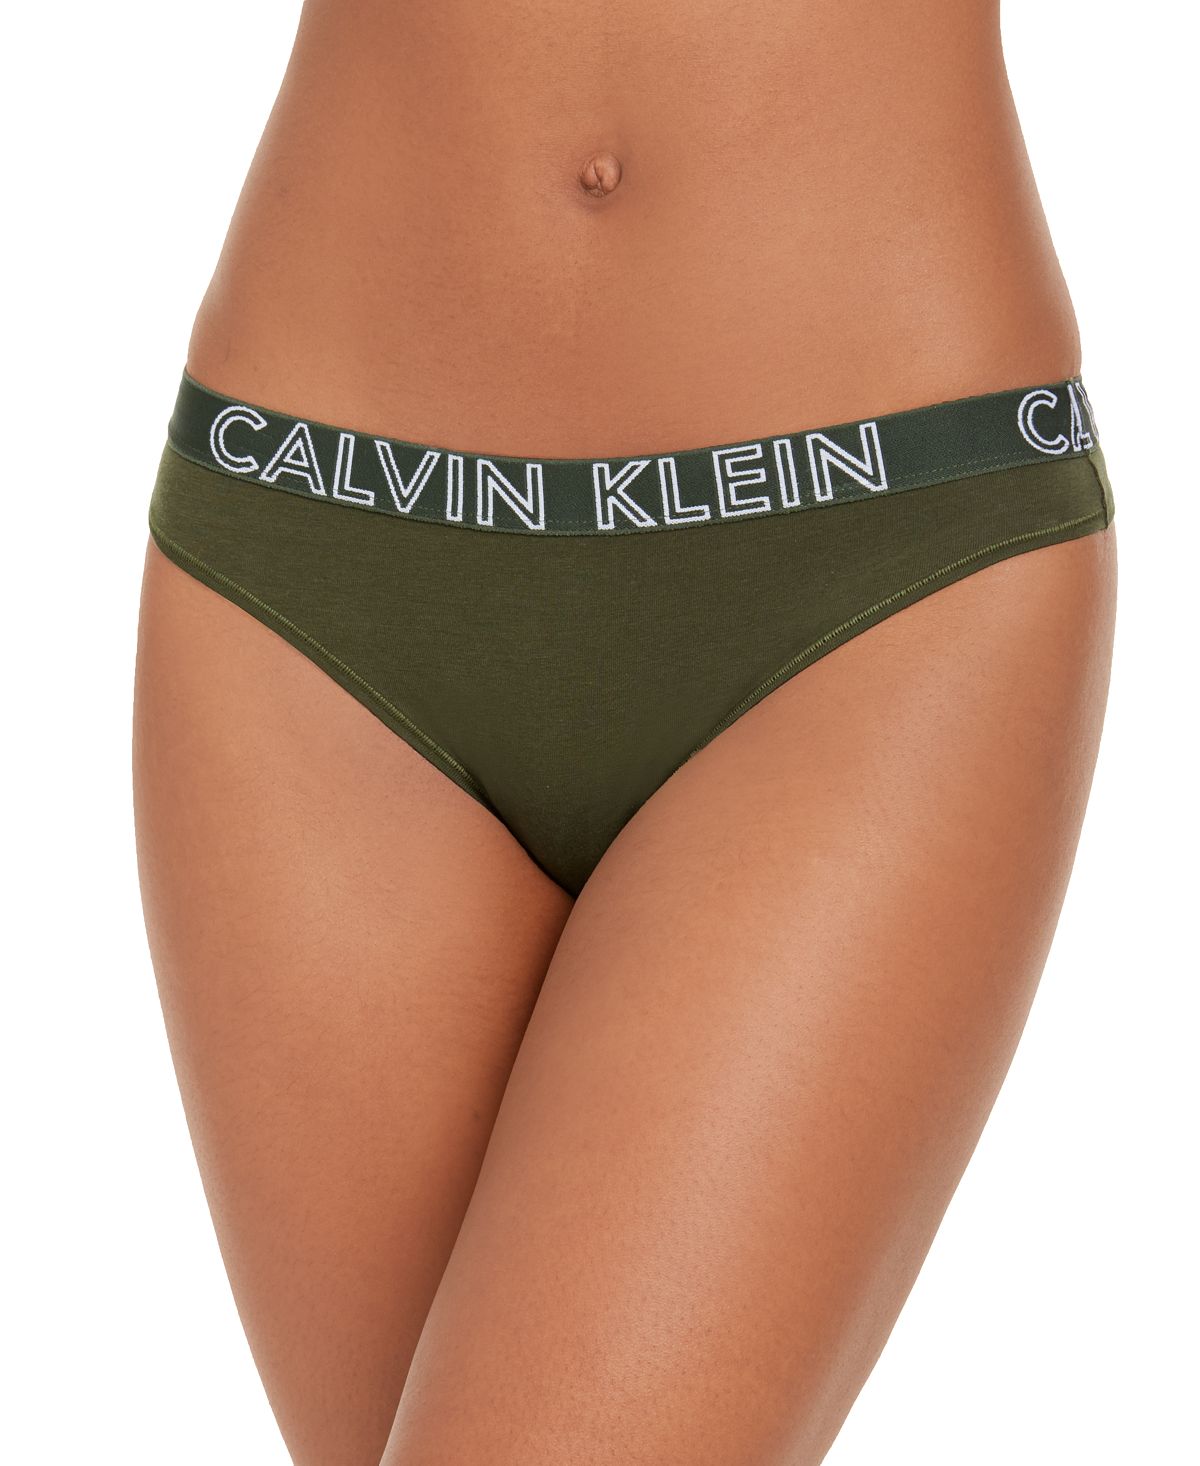 Calvin Klein Ck Ultimate Cotton Thong Qd3636 Duffel Bag